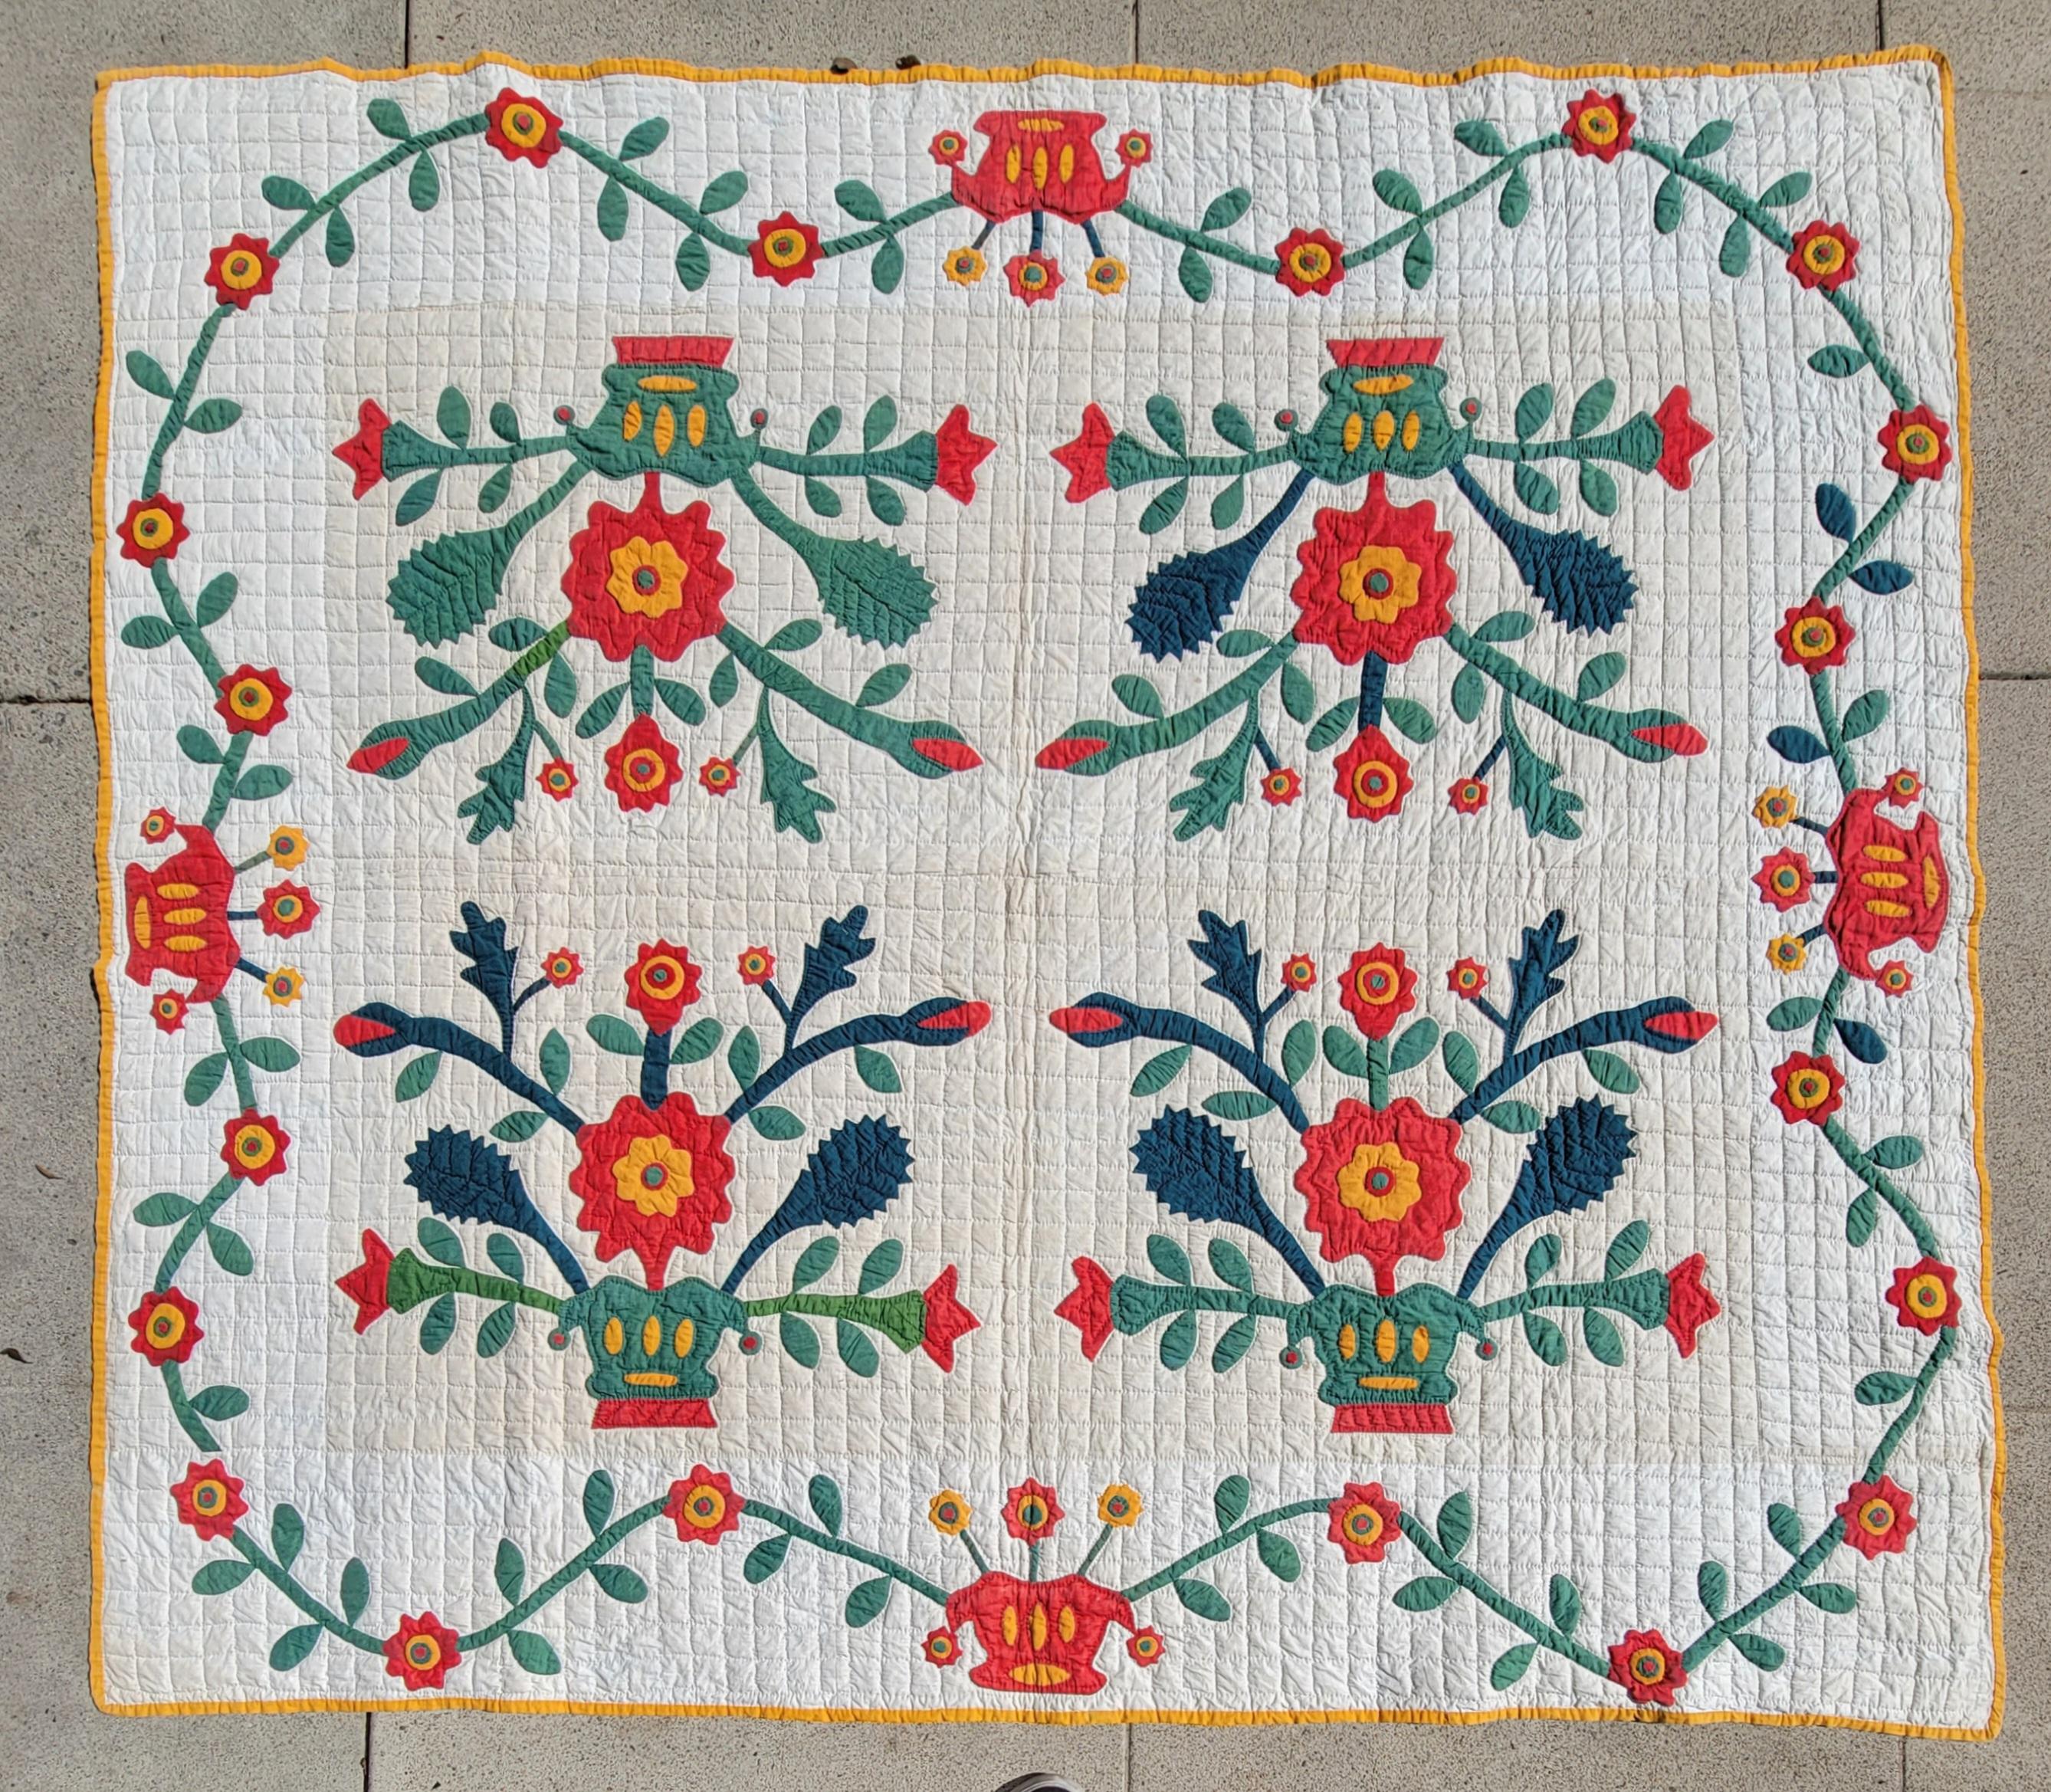 applique-Quilt aus Pennsylvania aus dem 19. Jahrhundert in gutem Zustand mit floraler Umrandung, ziemlich ungewöhnlich und einzigartig.